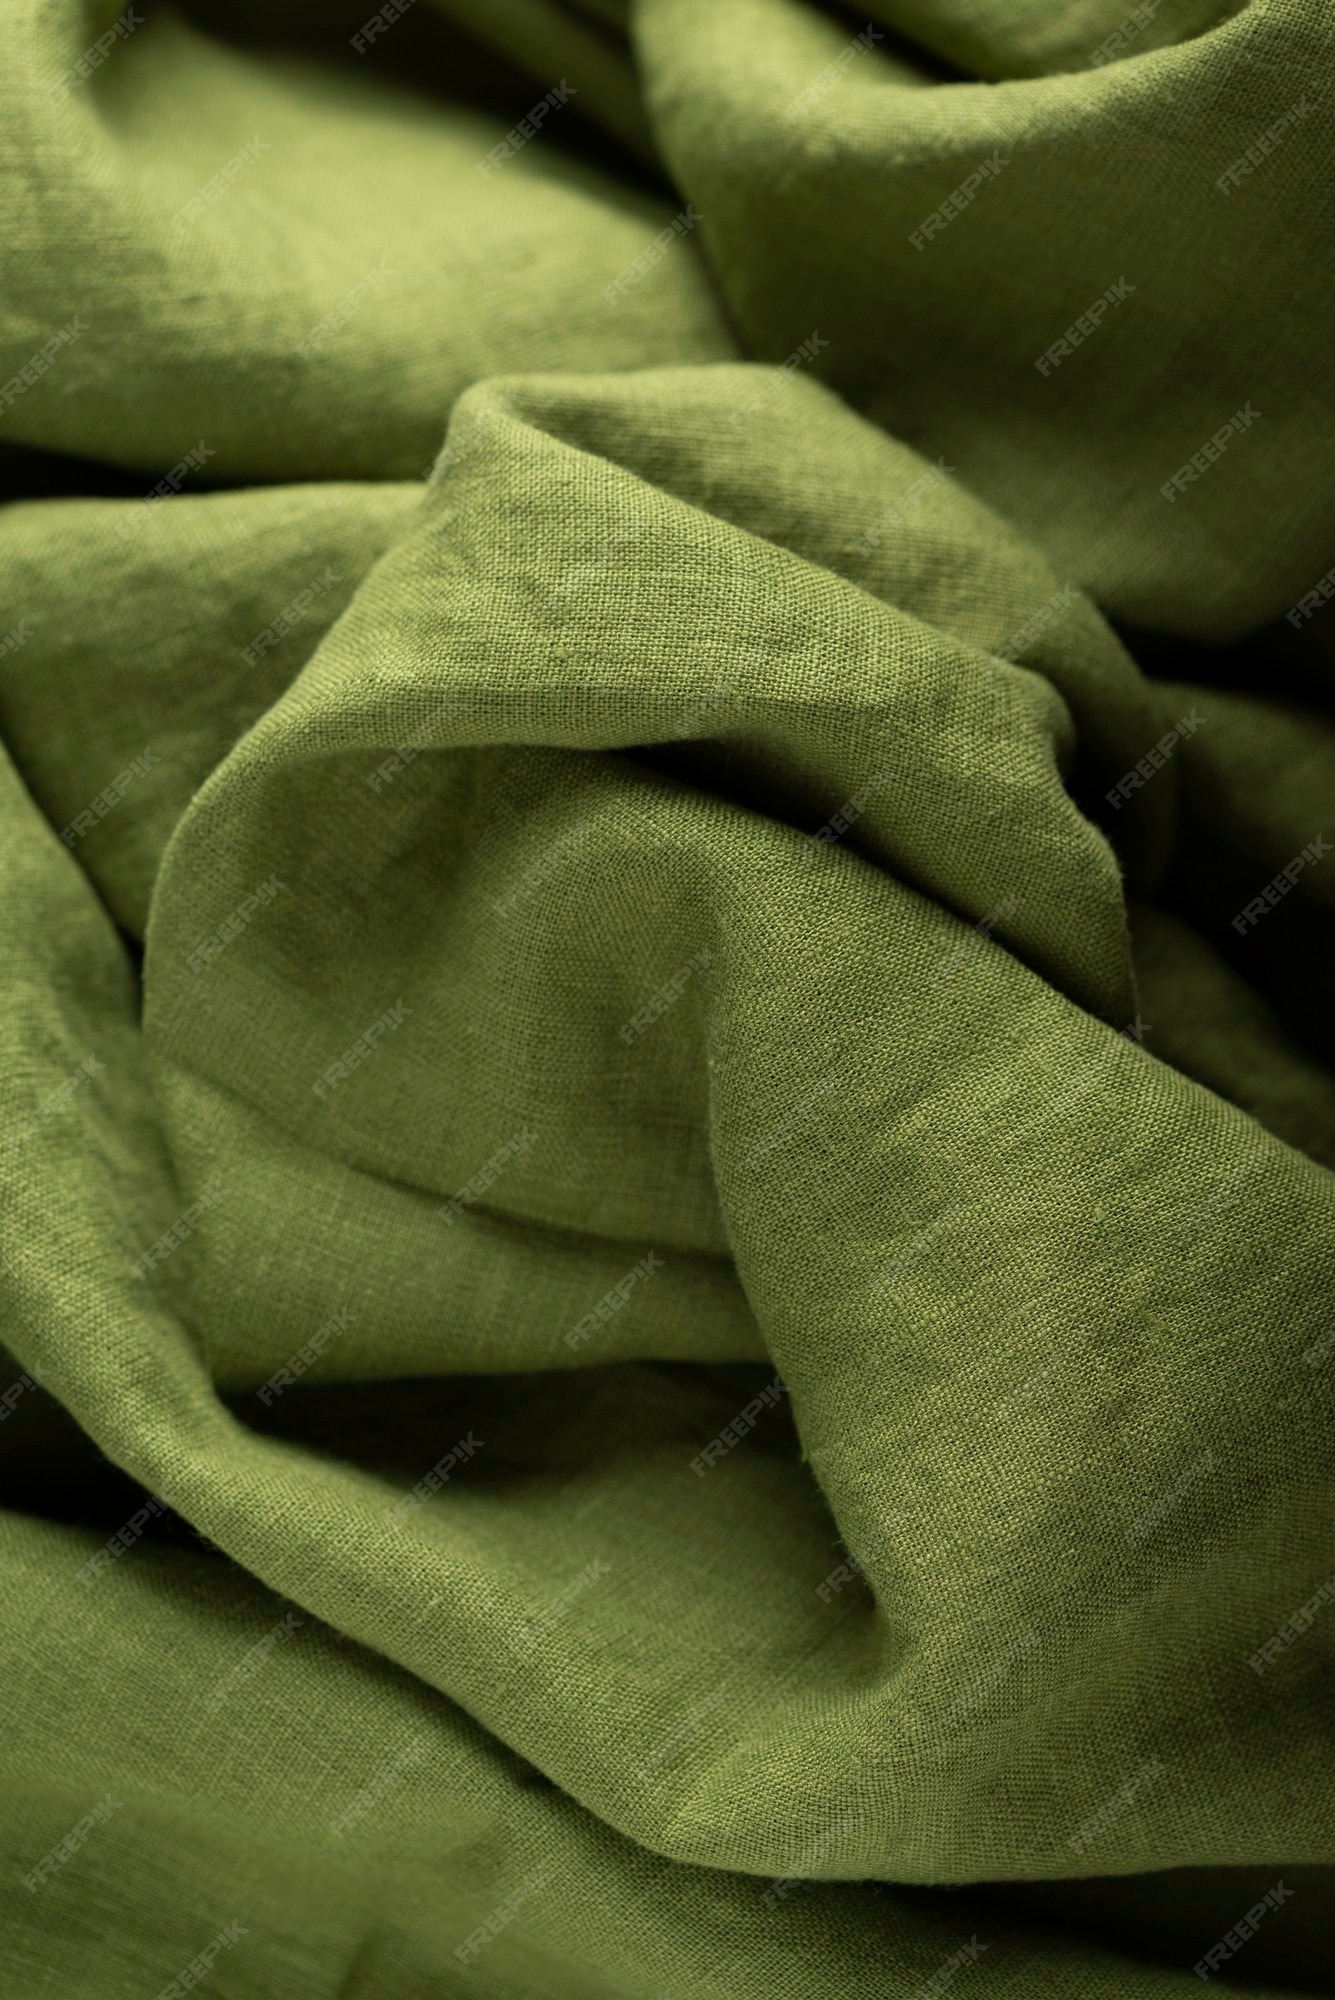 caldera seguramente Contaminado Textura de fondo de tela de lino en color verde. concepto de costura | Foto  Premium